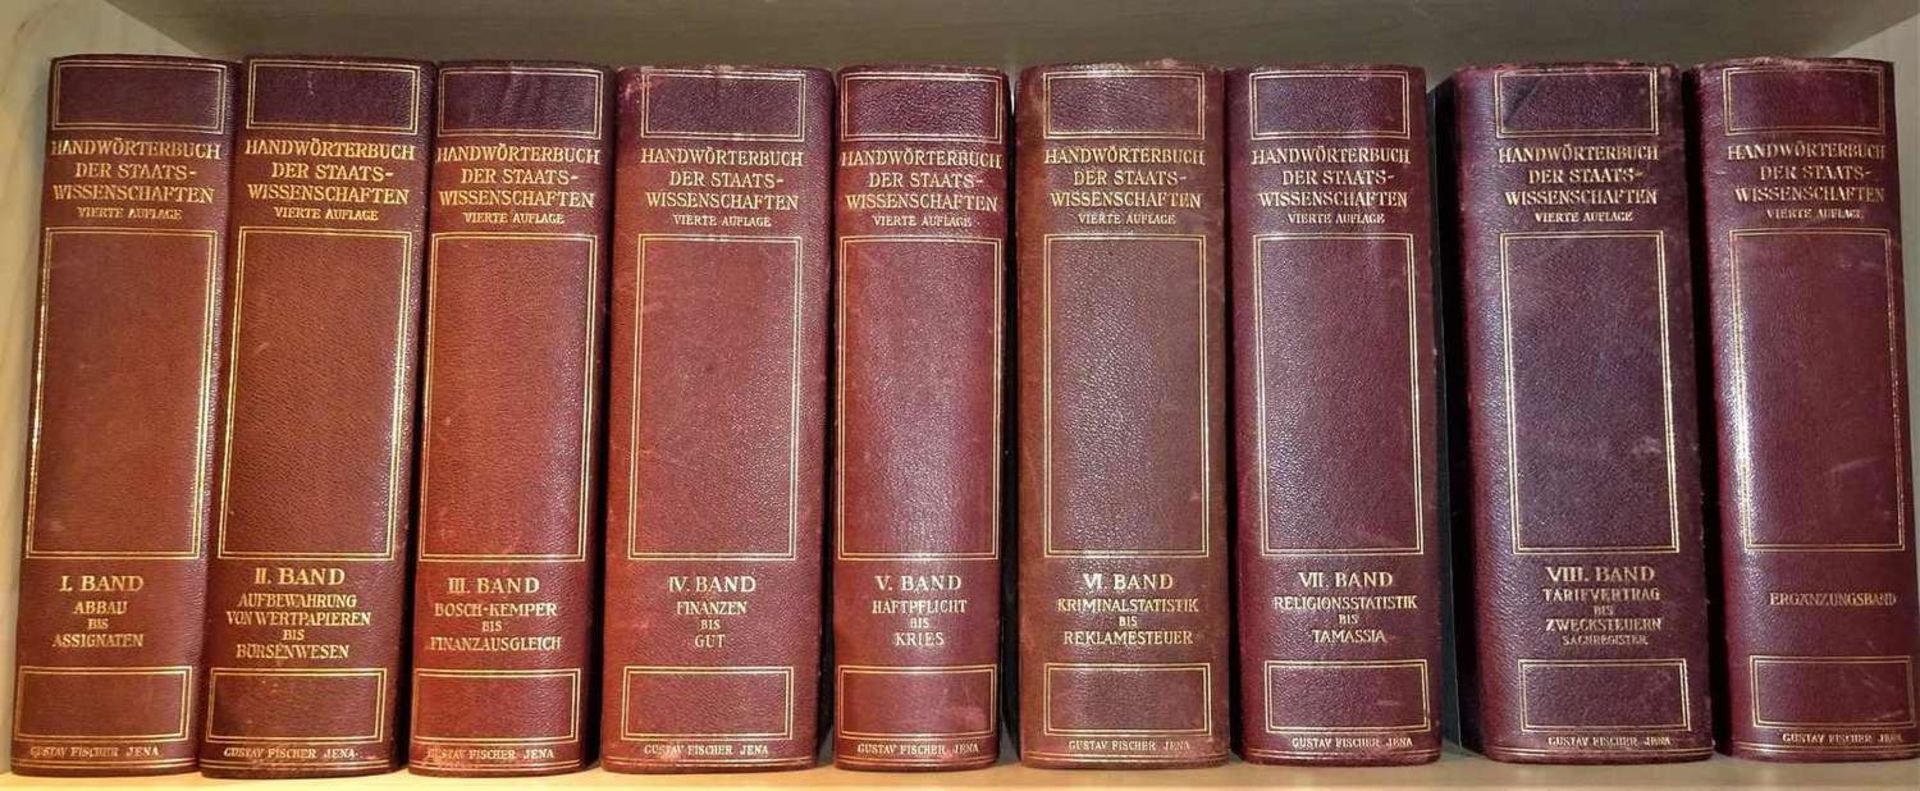 Handwörterbuch der Staats-Wissenschaften, Vierte Auflage, Band 1-8, sowie 1 Ergänzungsband. Jena,